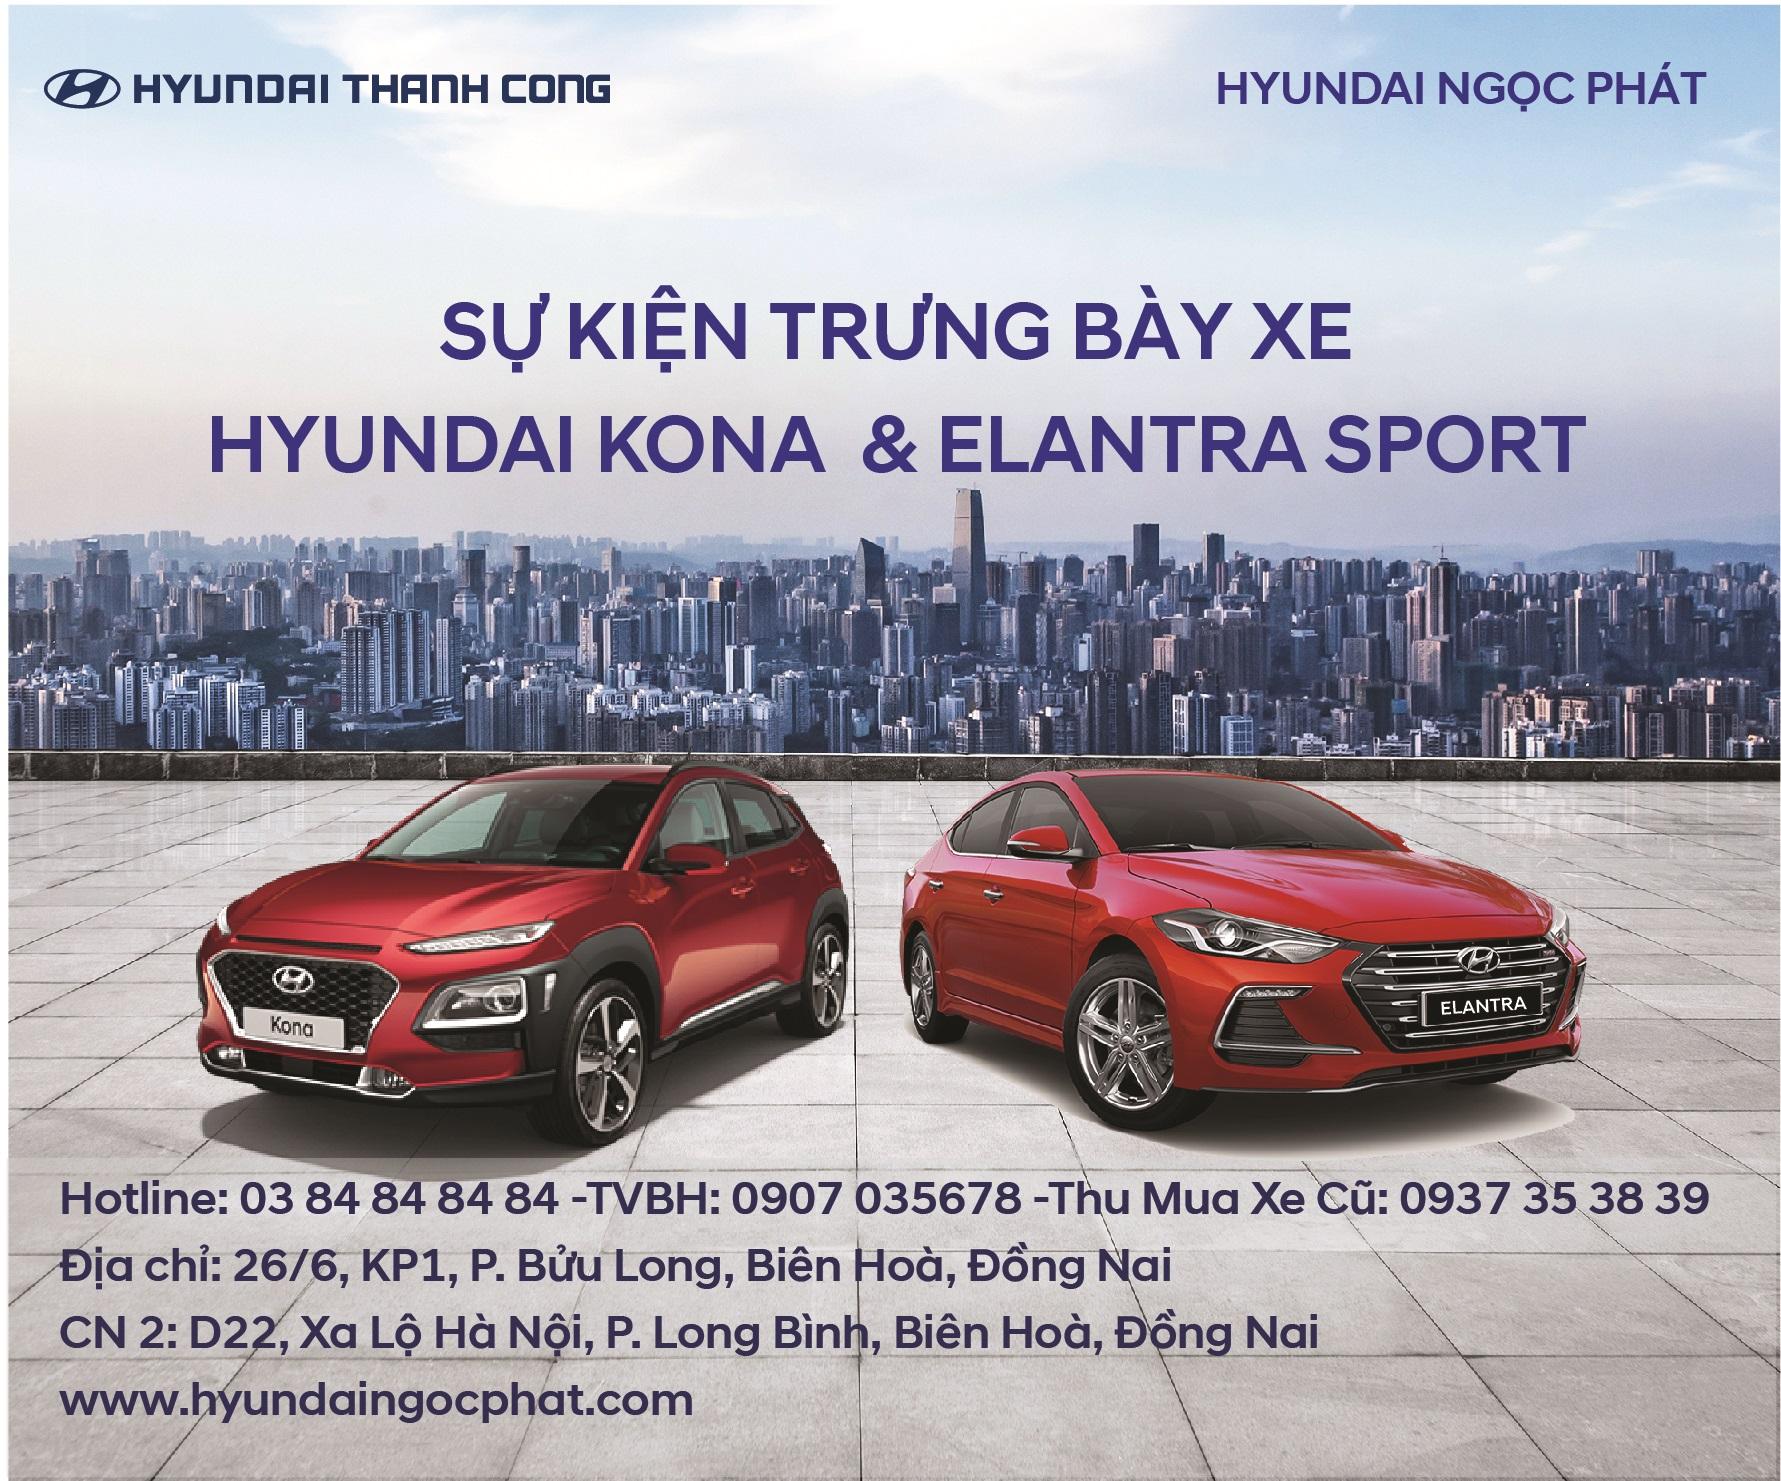 Sự kiện trưng bày xe Hyundai KONA & Elantra Sport tại Nhà Hàng Ngọc Phát Riverside